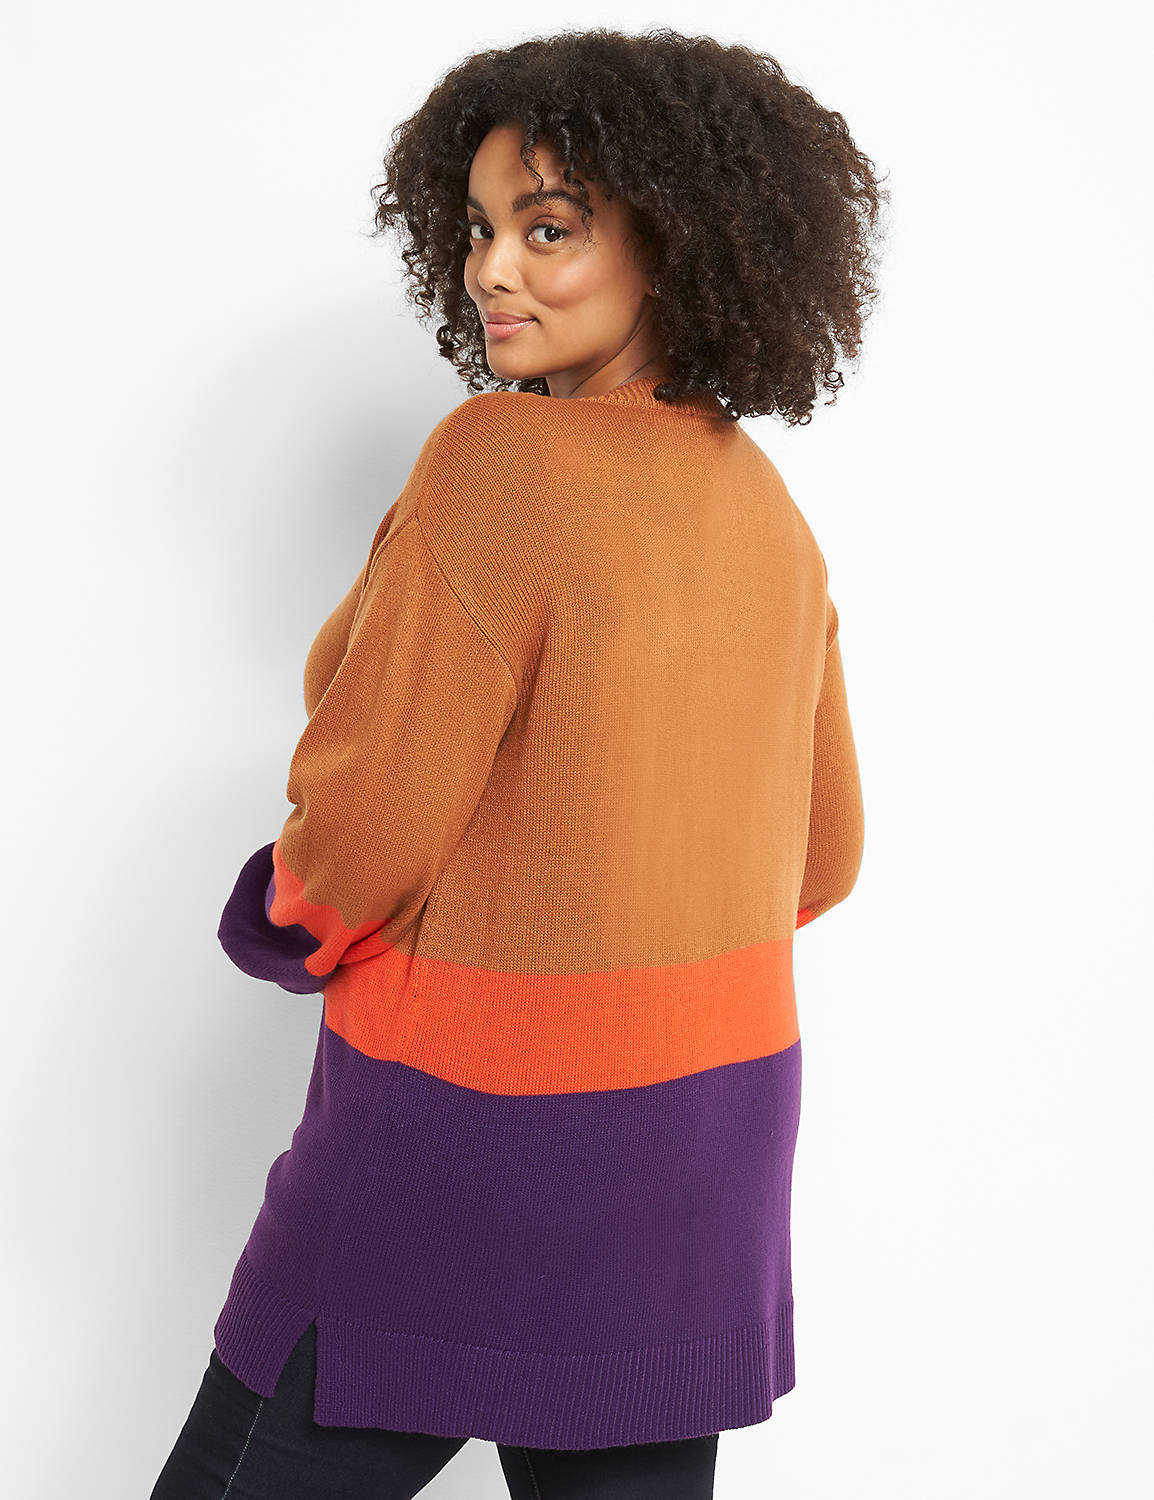 Blouson-Sleeve Tunic Sweater Product Image 2